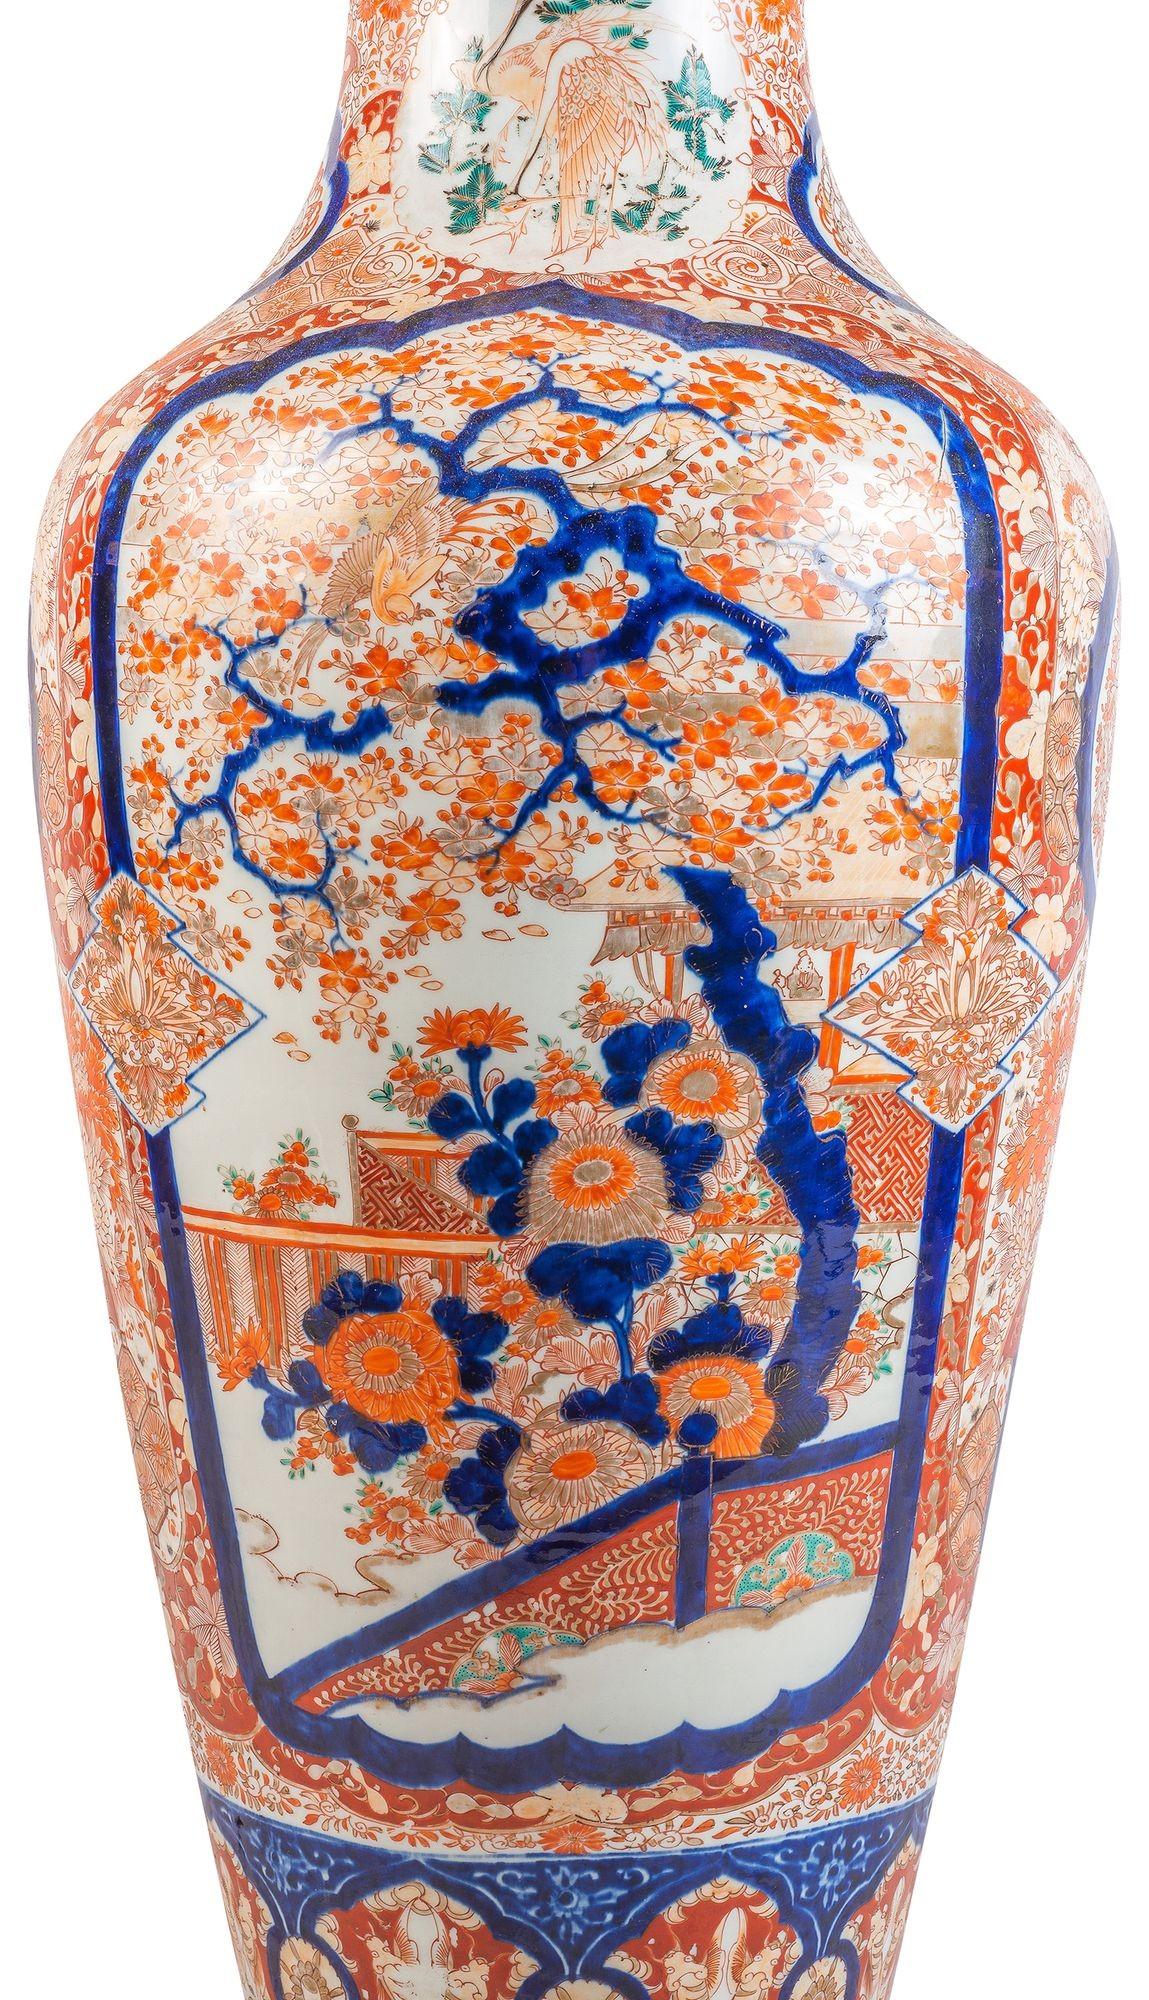 Un grand et impressionnant vase japonais Imari du 19e siècle, aux magnifiques couleurs traditionnelles orange et bleu, avec un motif classique, des bordures et un fond feuillus. Panneaux encastrés peints à la main d'arbres en fleurs exotiques, de